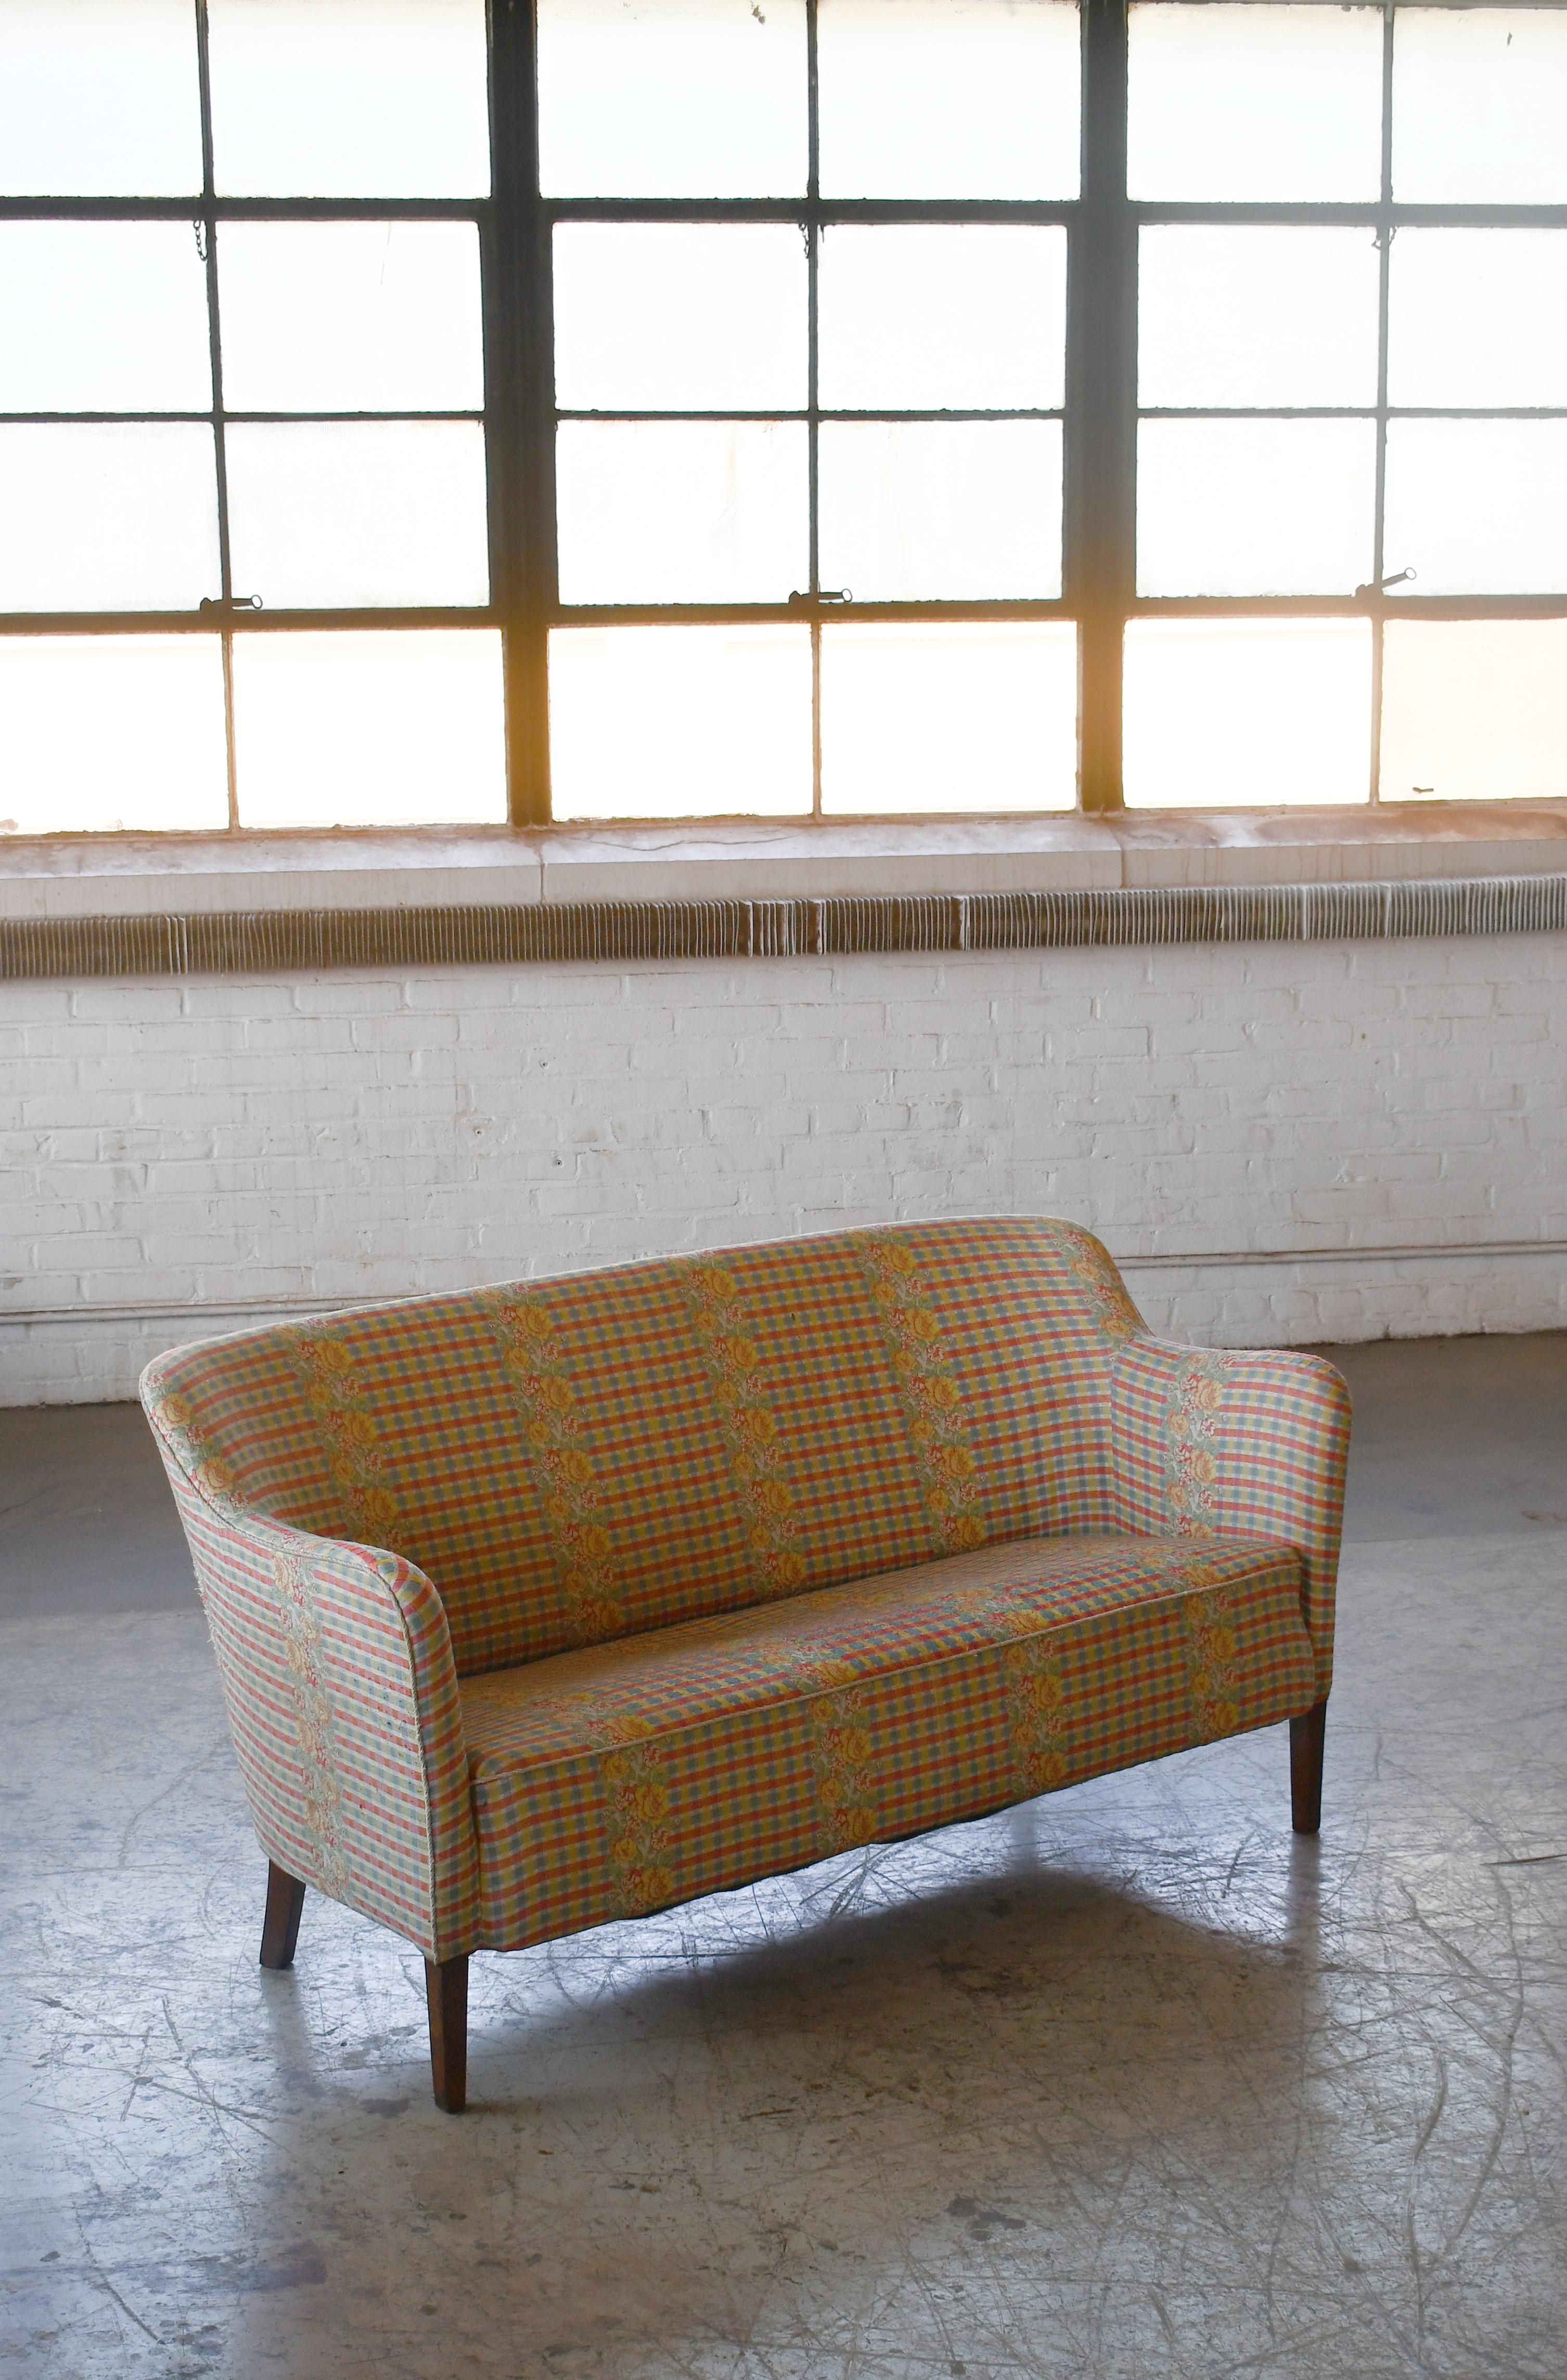 Klassische und sehr elegante Linien, ganz im Stil des frühen dänischen Designers Peter Hvidt aus den späten 1940er bis 1950er Jahren. Rückenlehne und Sitz sind schön fest und der Rahmen auf den kubanischen Mahagonibeinen bleibt stabil. Das Sofa